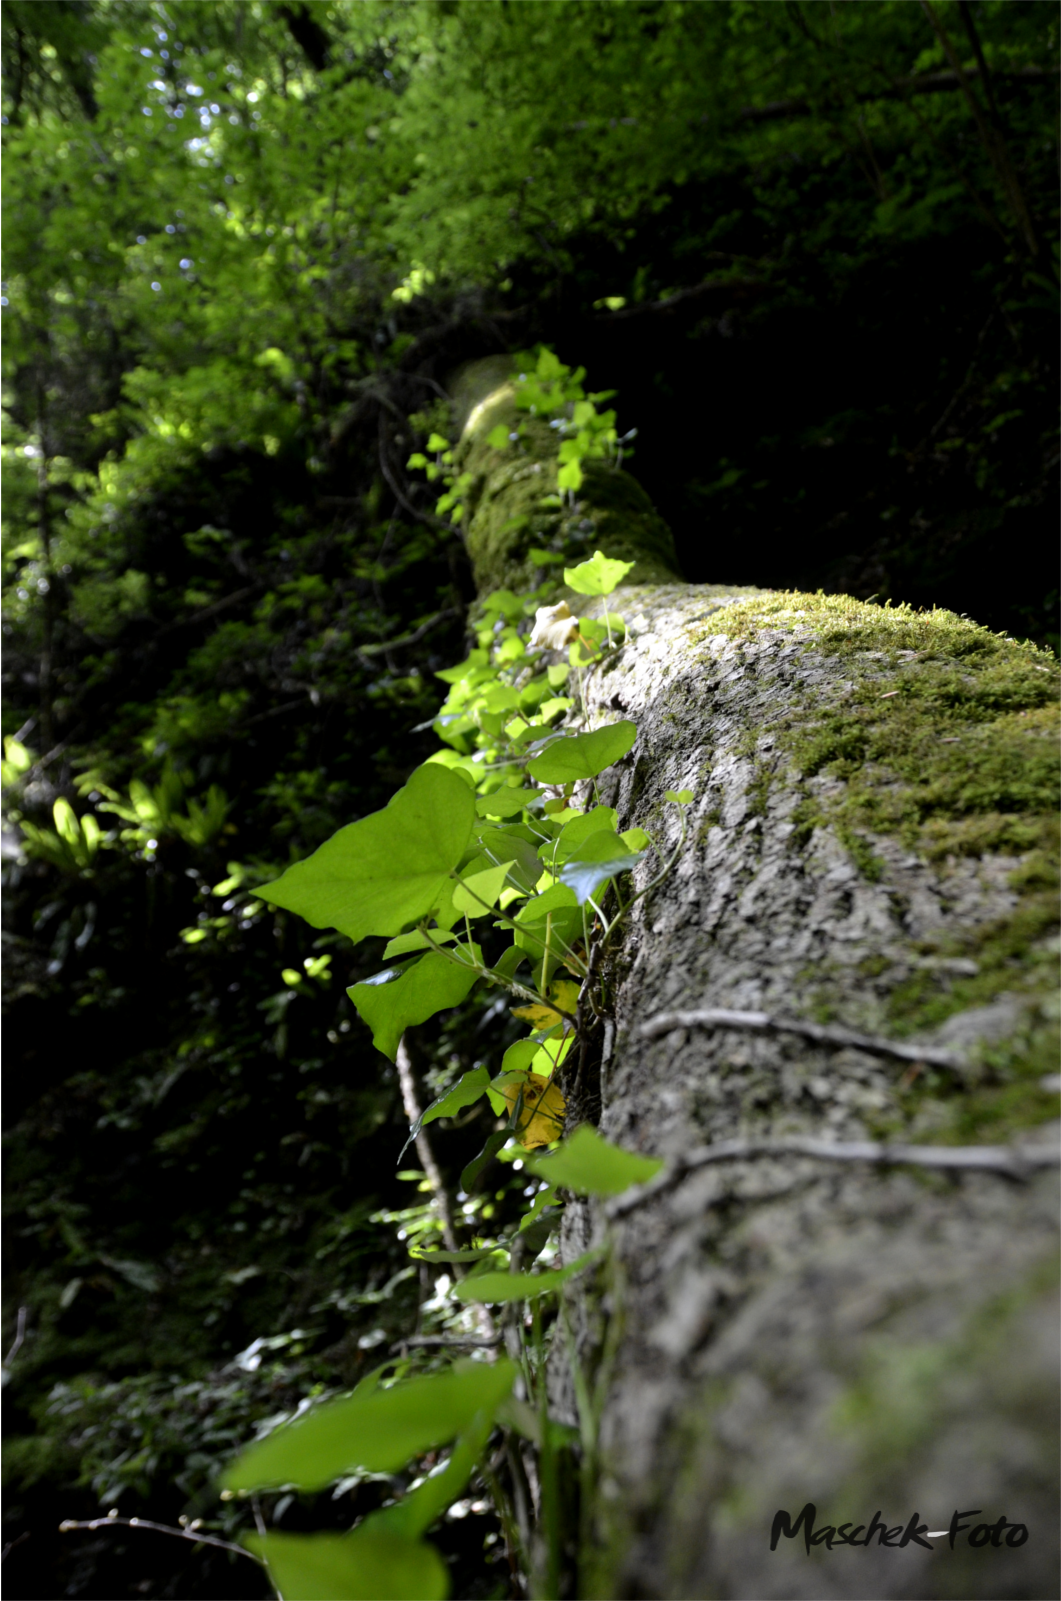 Badl Klamm Baum mit Kletterpflanze